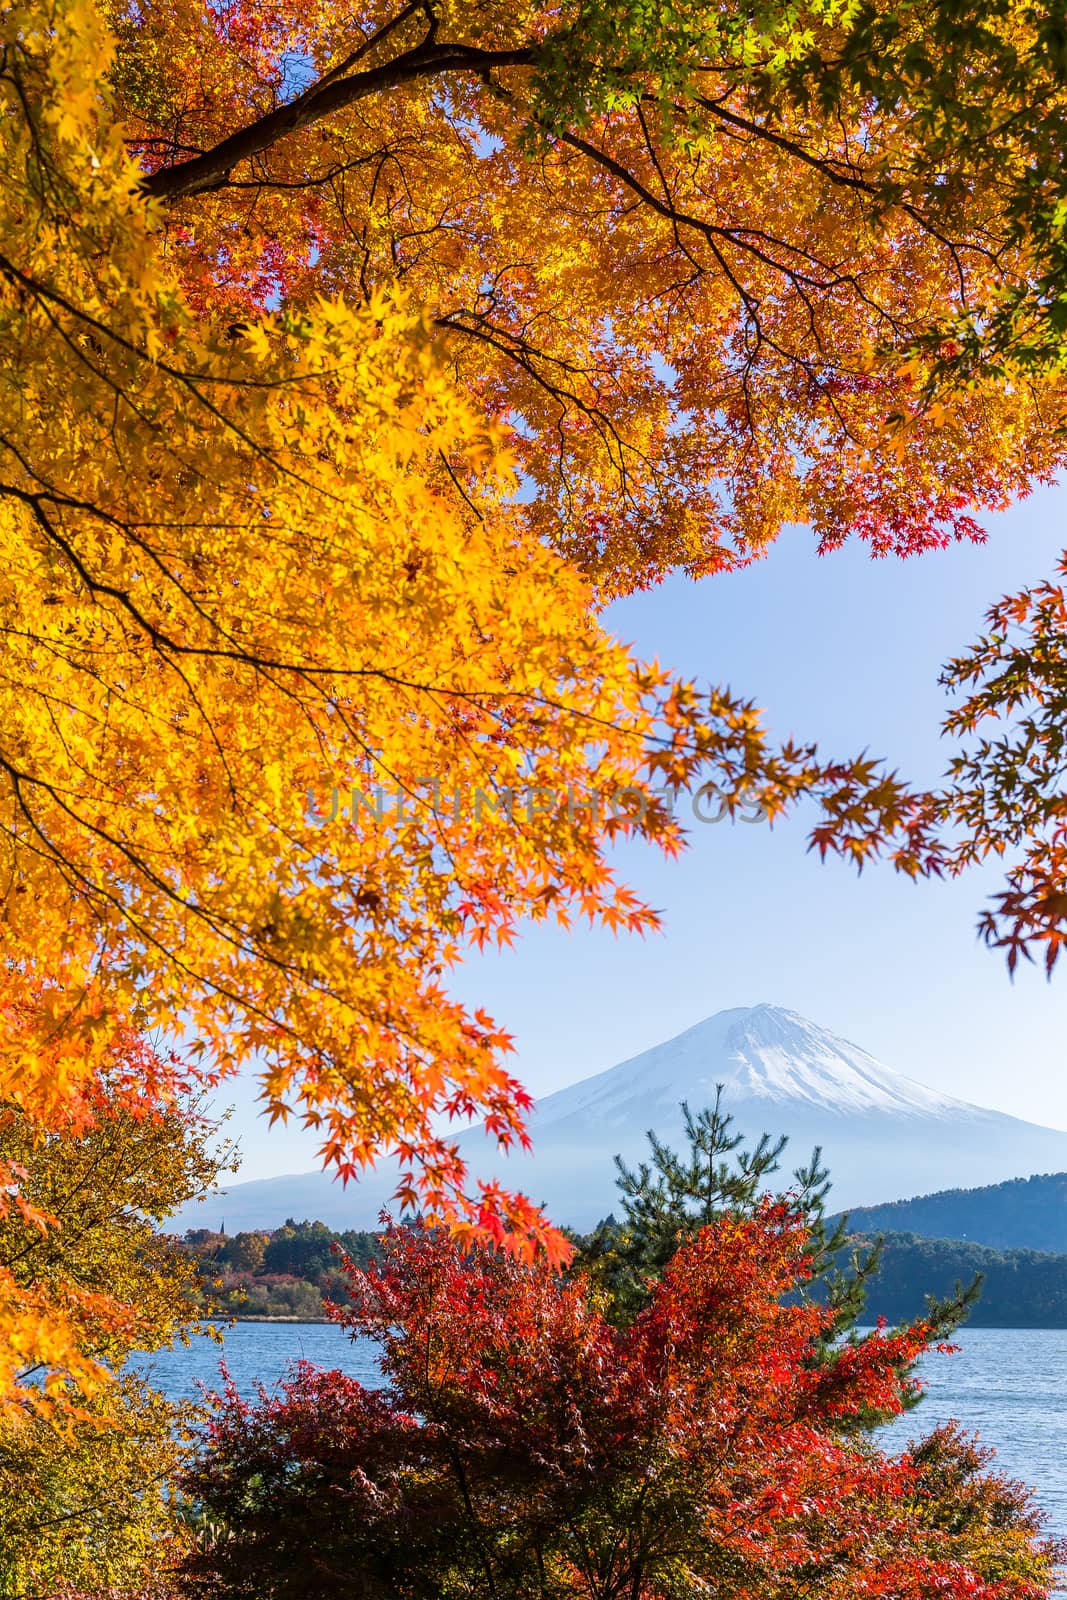 Mountain Fuji in autumn season